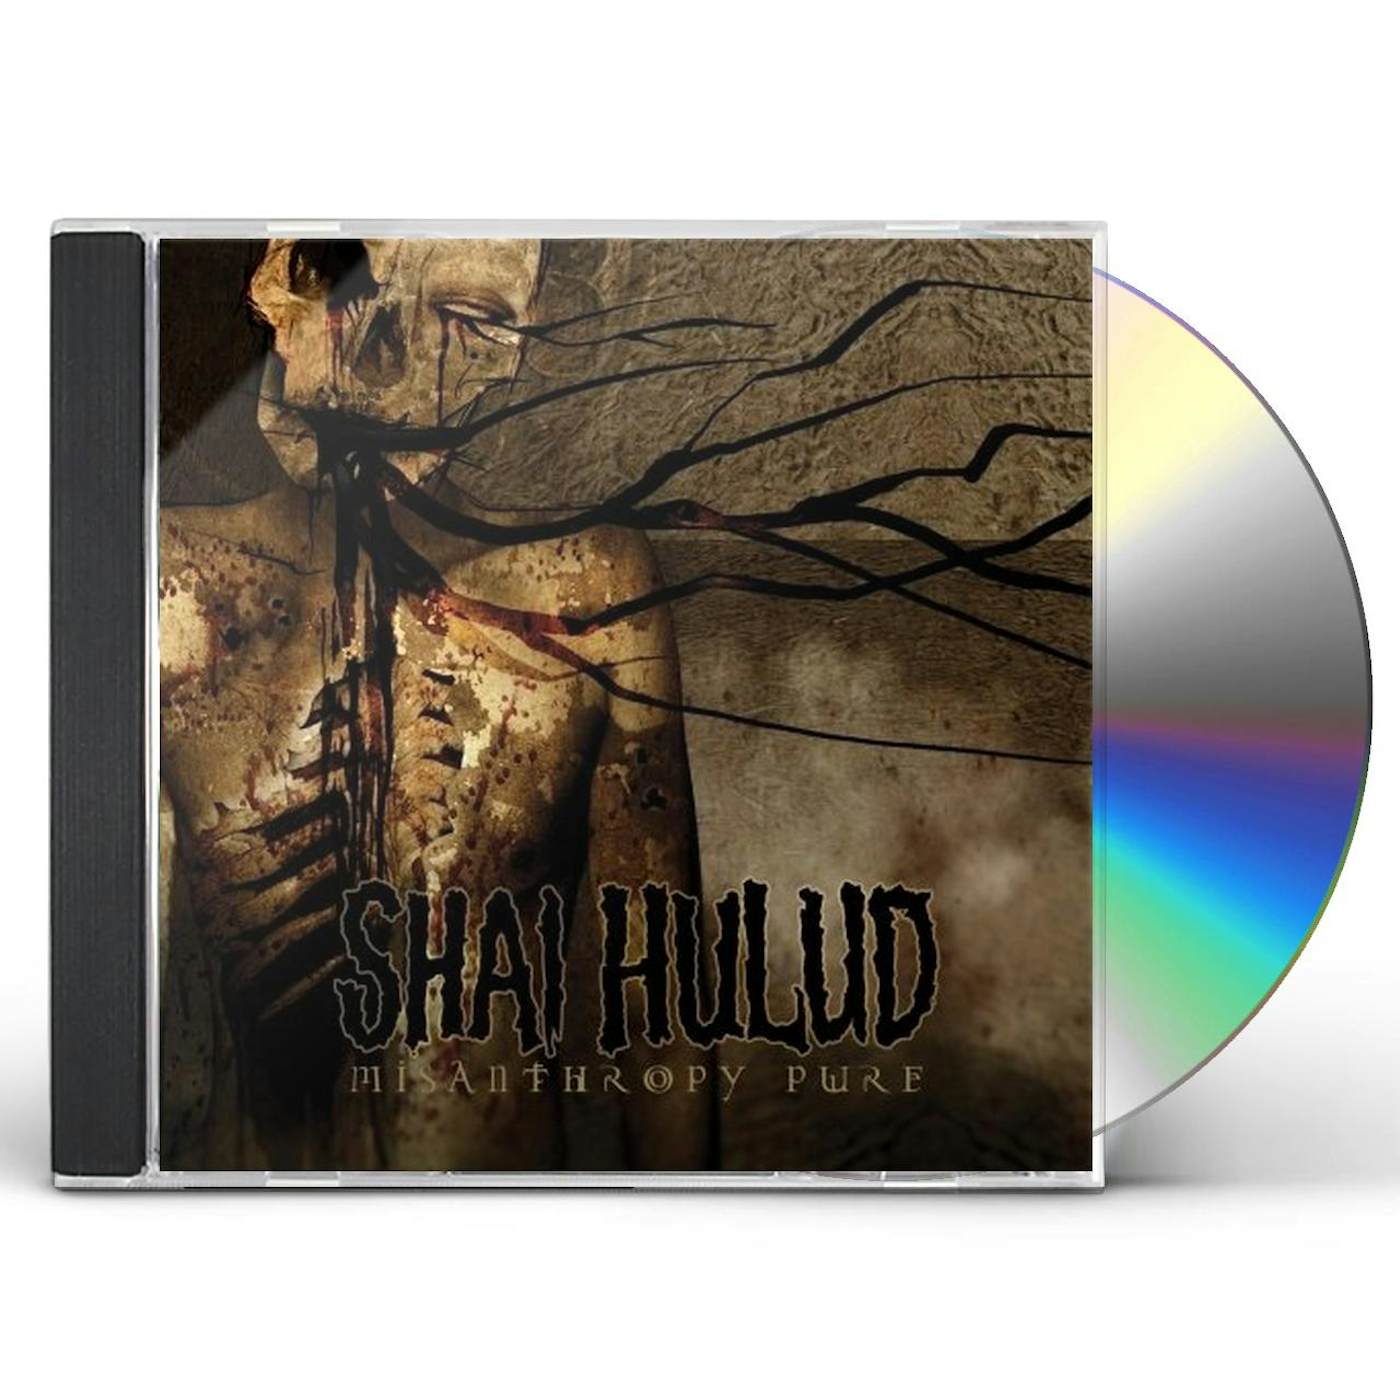 Shai Hulud MISANTHROPY PURE CD